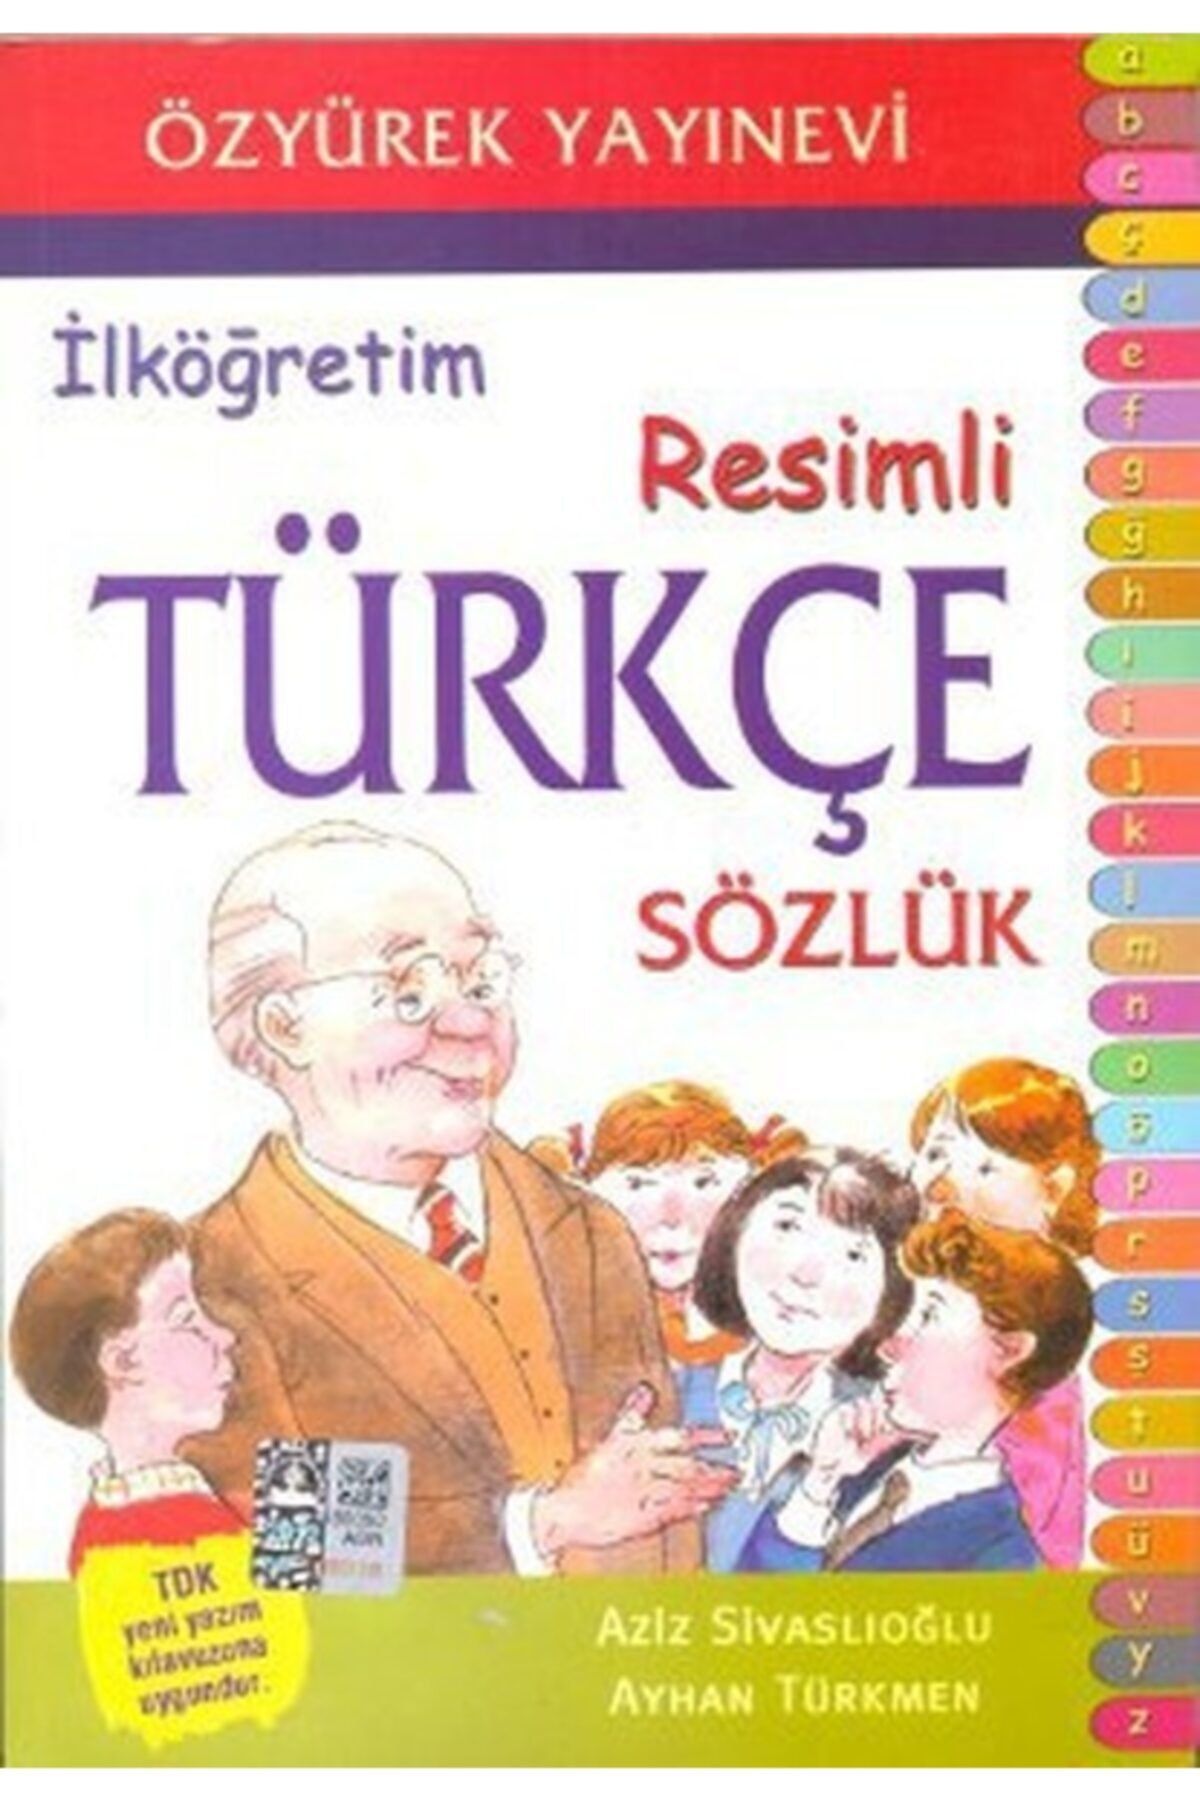 Özyürek Yayınları Ilkokul Düzeyi Resimli Türkçe Sözlük Tamamı Renkli Baskı 456 Sayfa